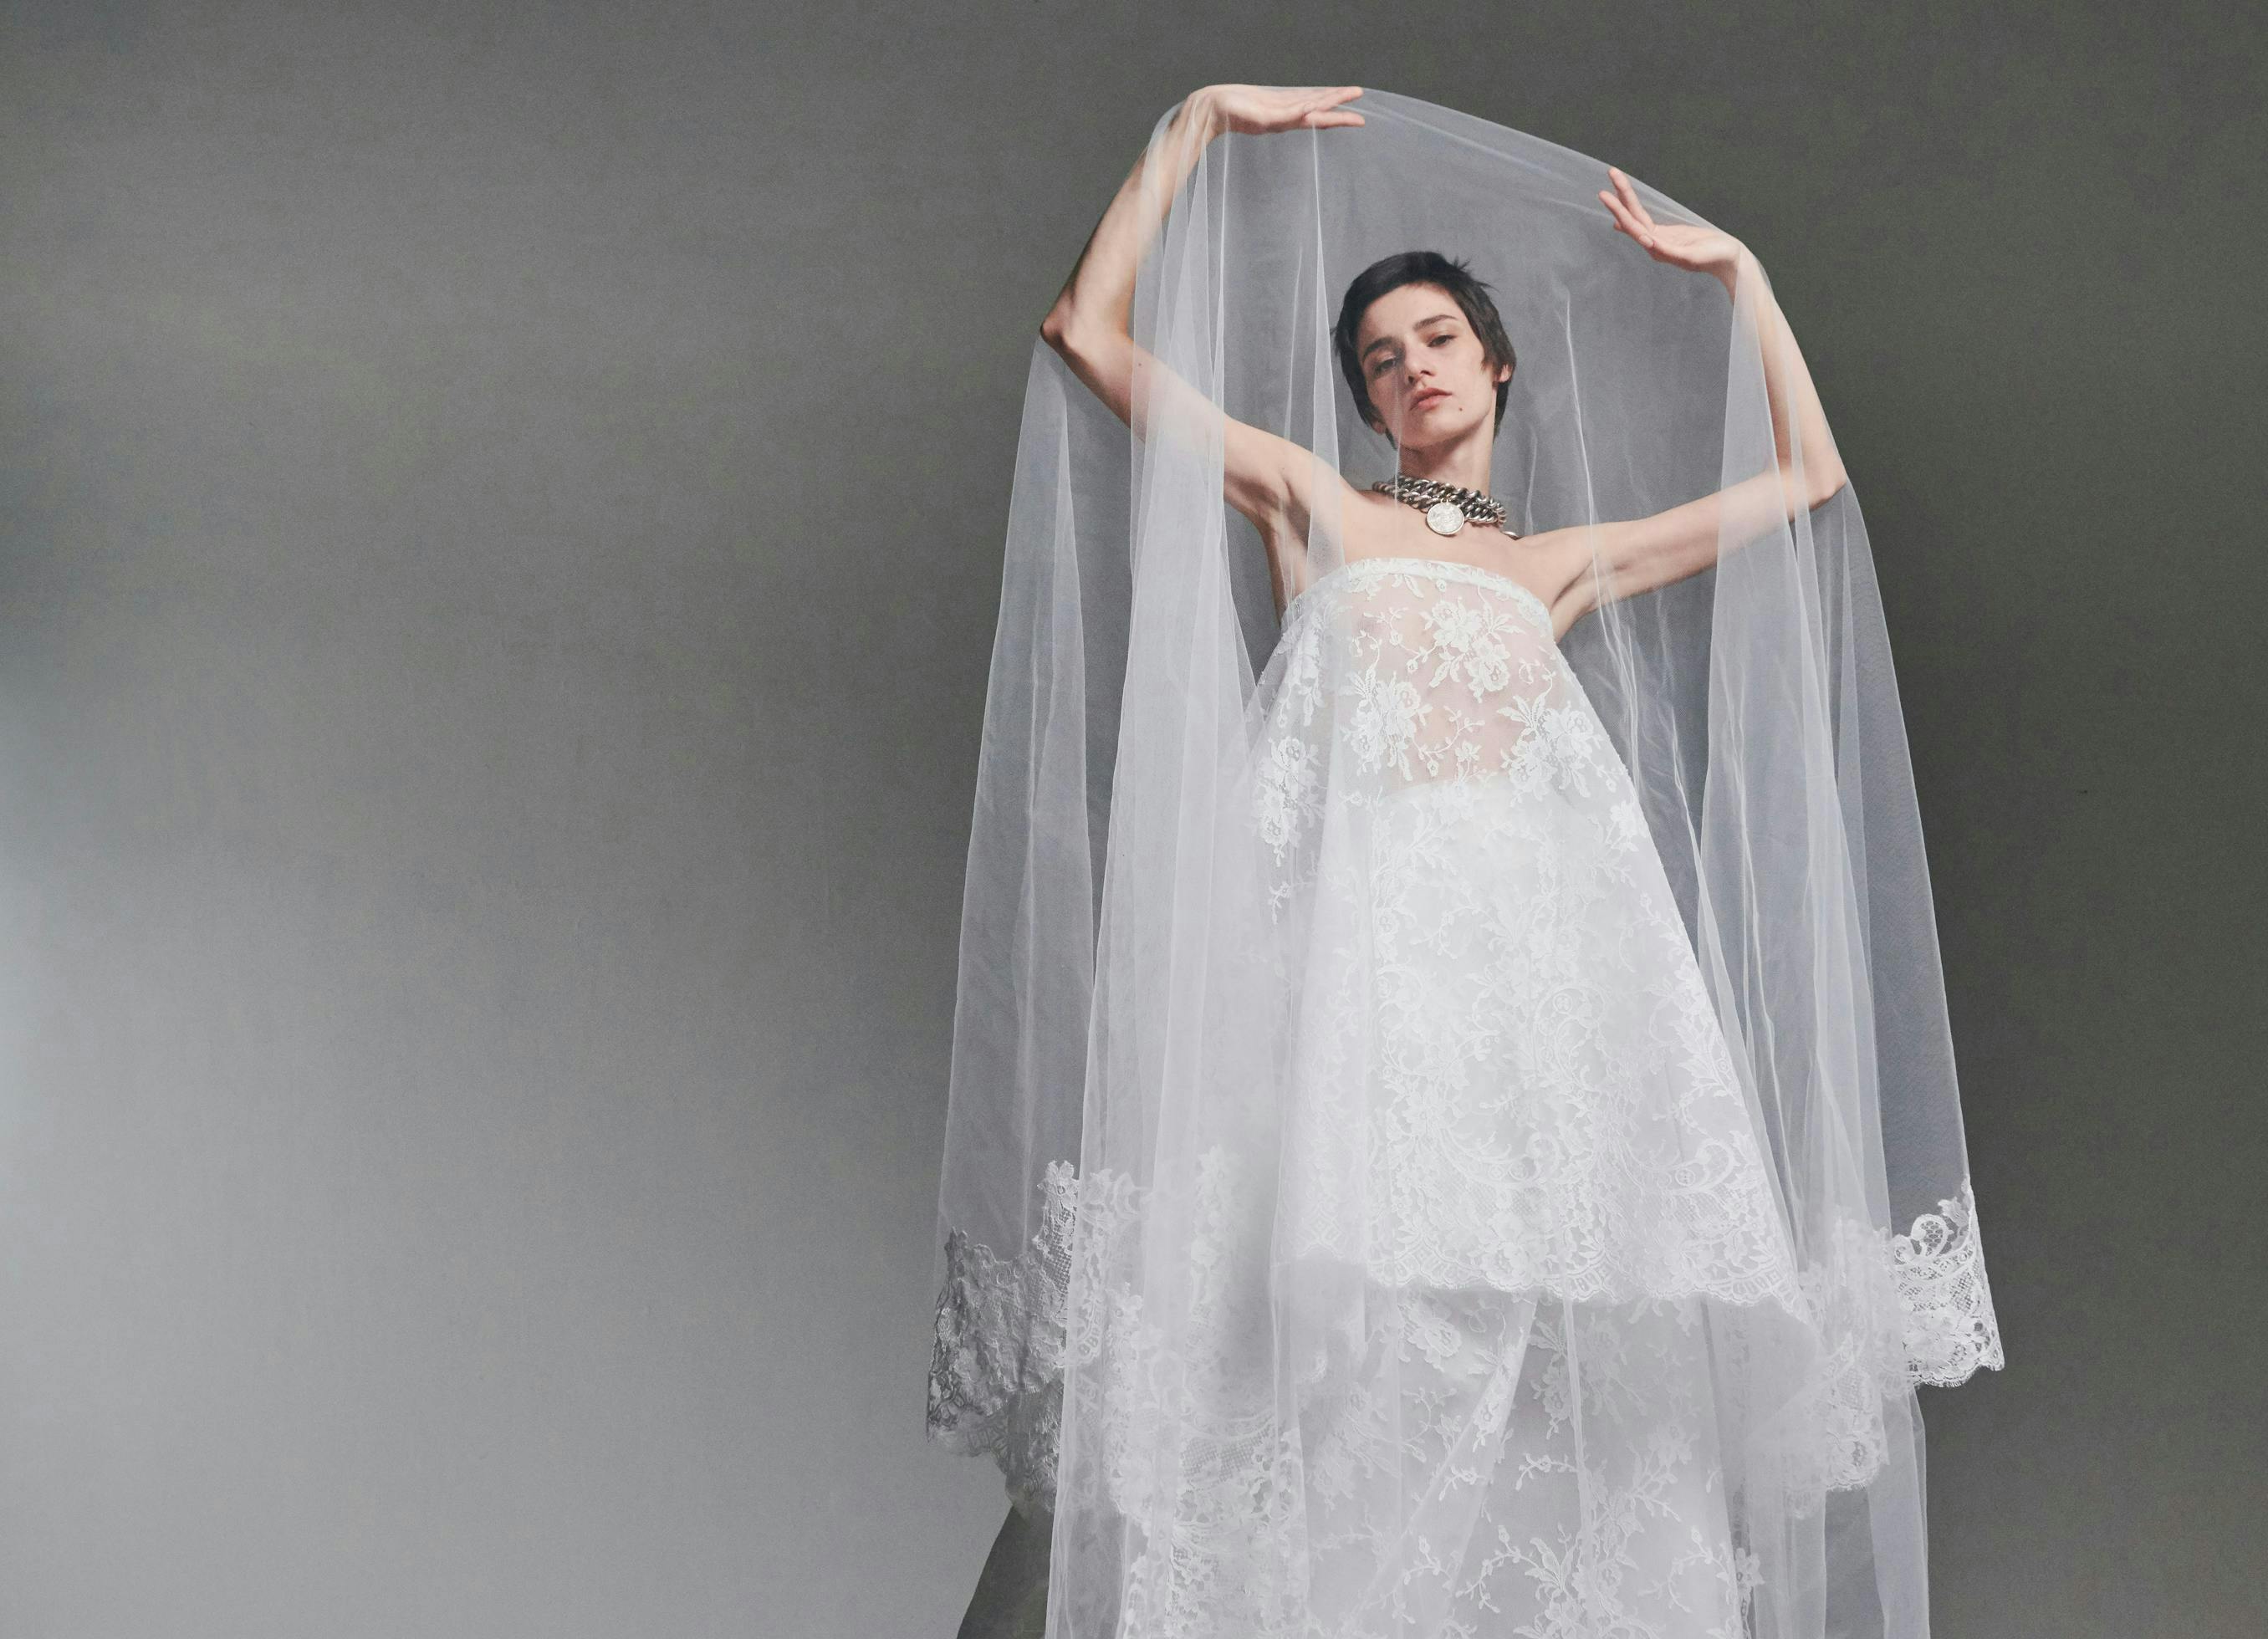 clothing apparel veil wedding gown fashion wedding gown robe